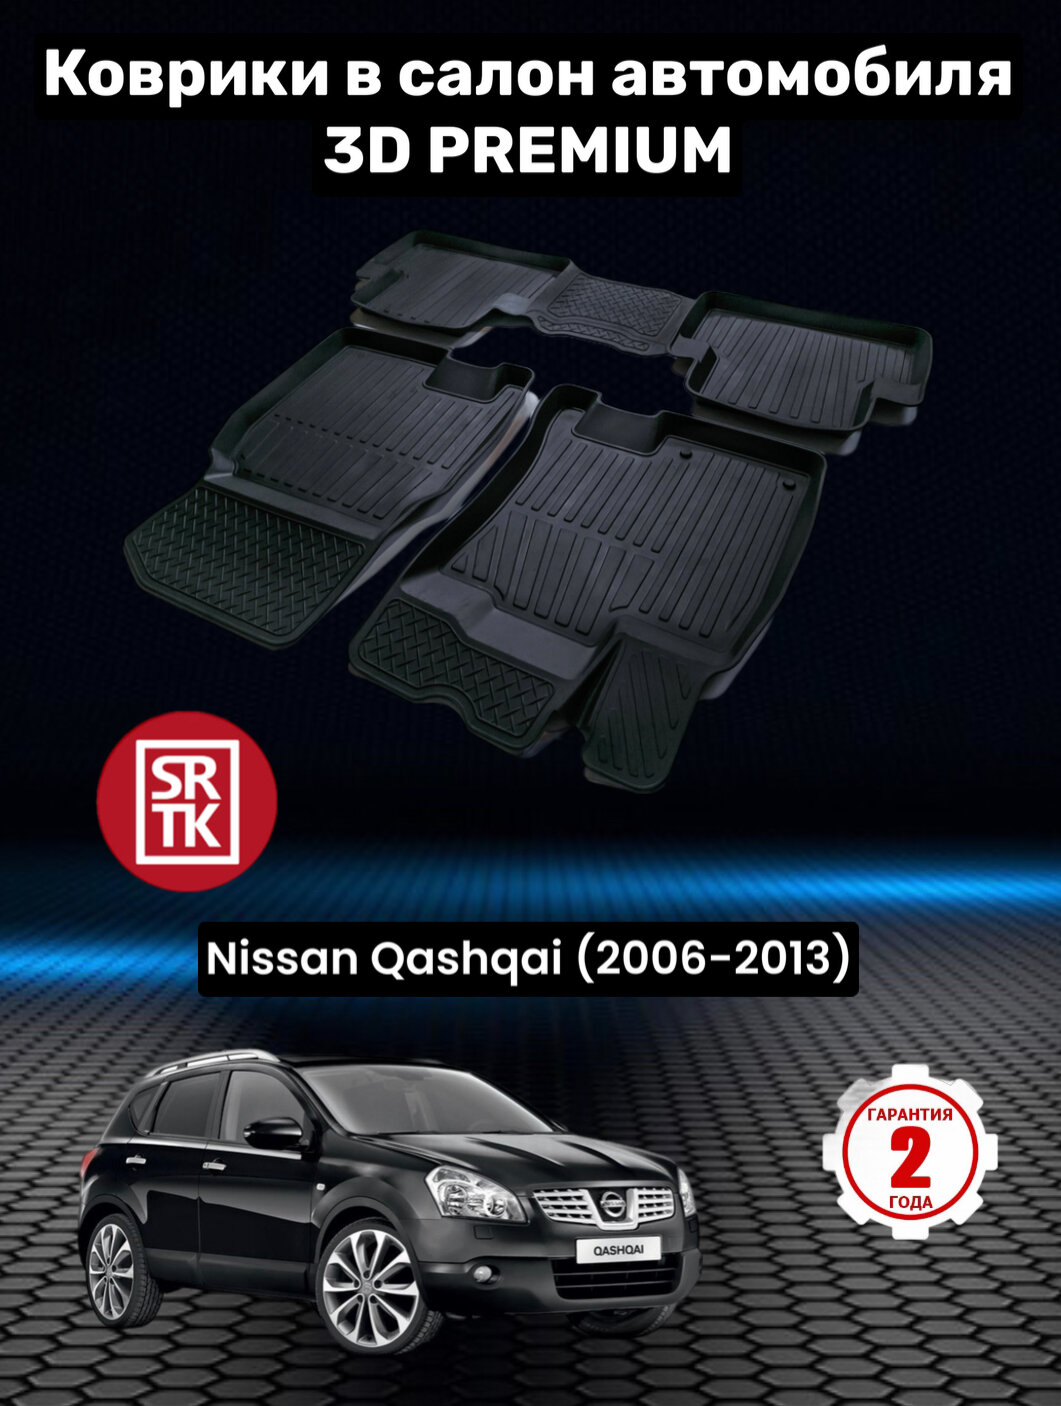 Коврики резиновые в салон для Ниссан Кашкай / Nissan Qashqai (2006-2013) 3D PREMIUM SRTK (Саранск) комплект в салон